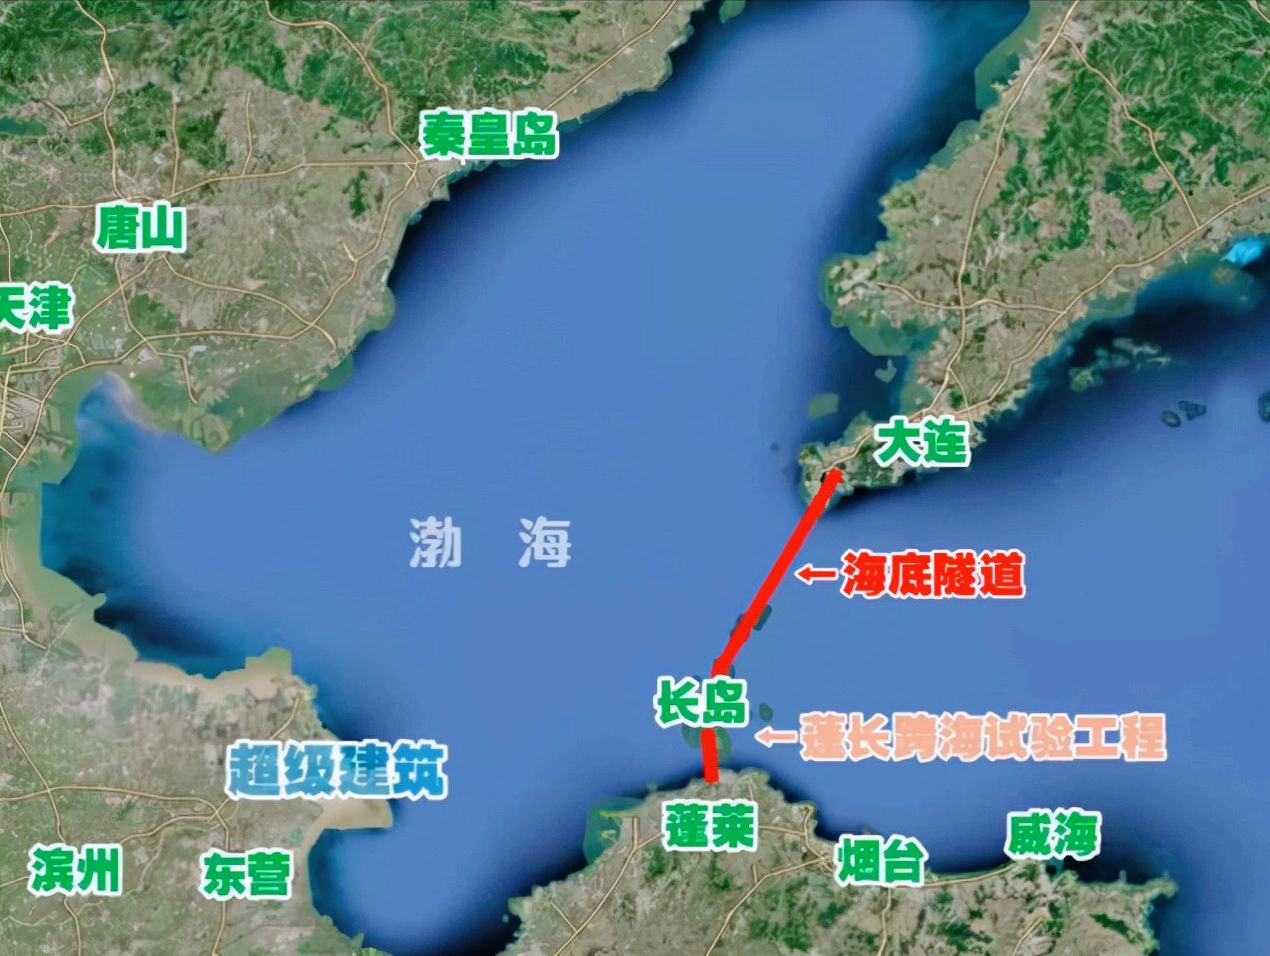 中国2600亿的超级工程烟台大连海底隧道为何迟迟不见动静